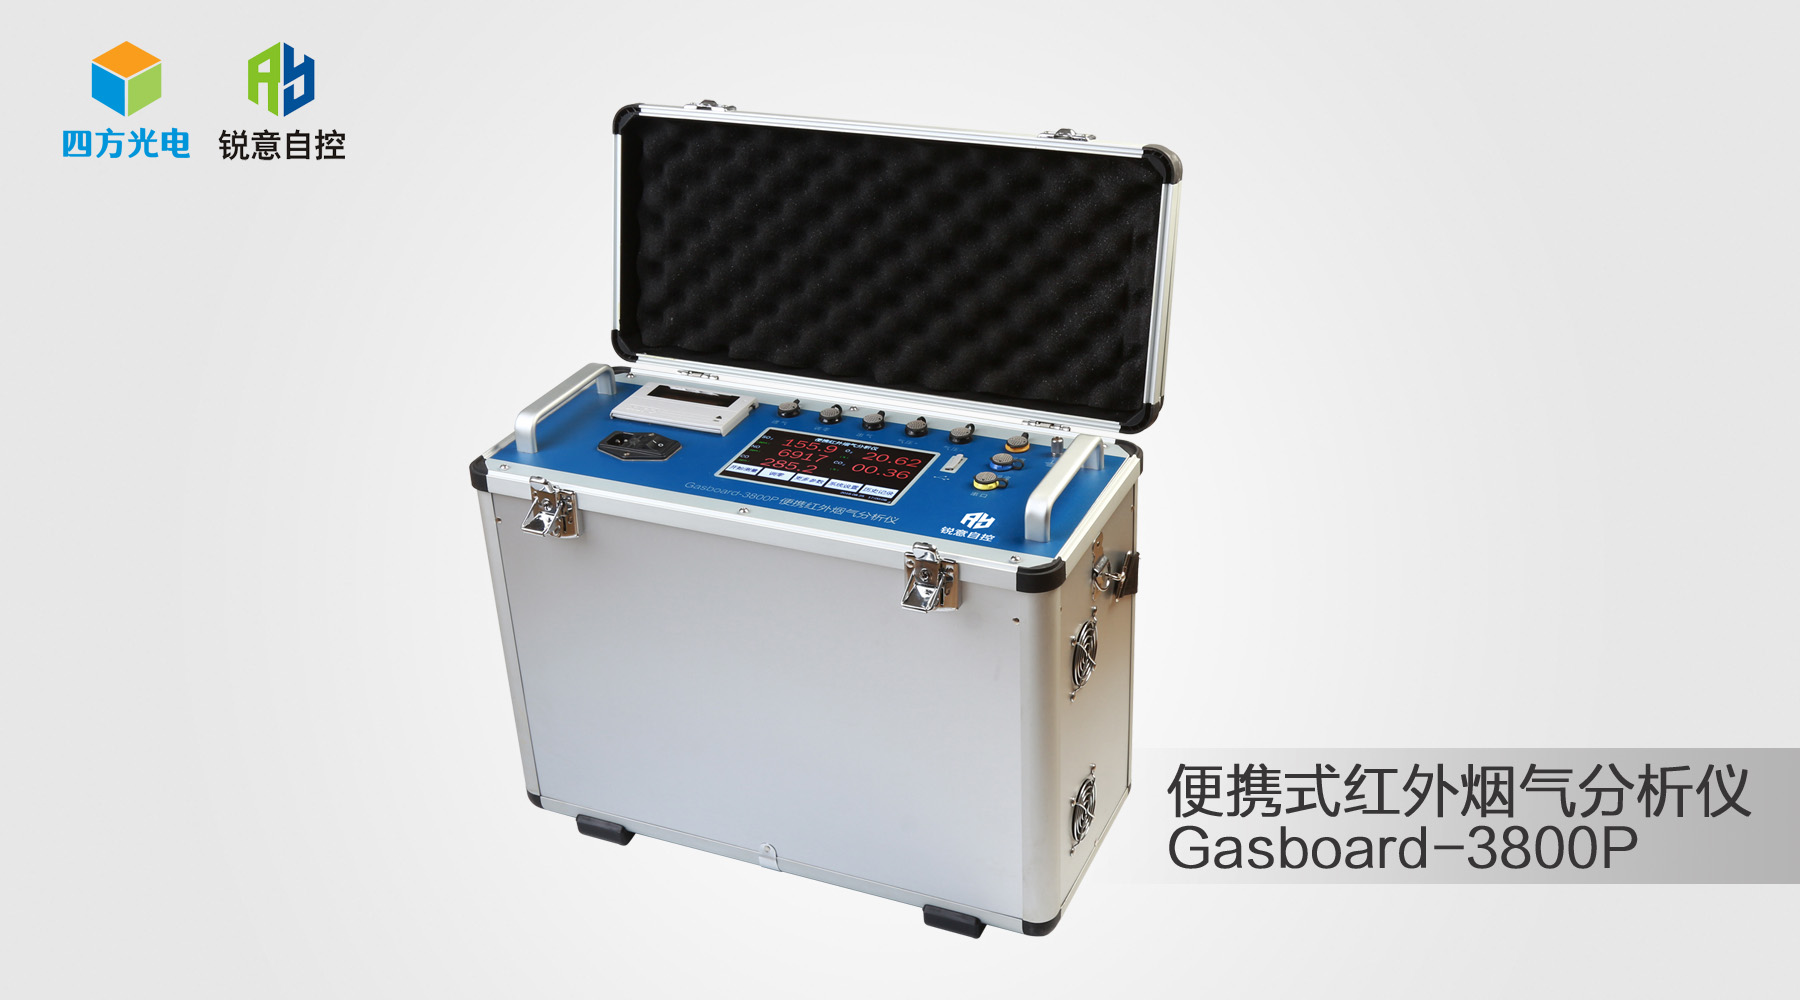 锐意自控便携式红外烟气分析仪Gasboard-3800P